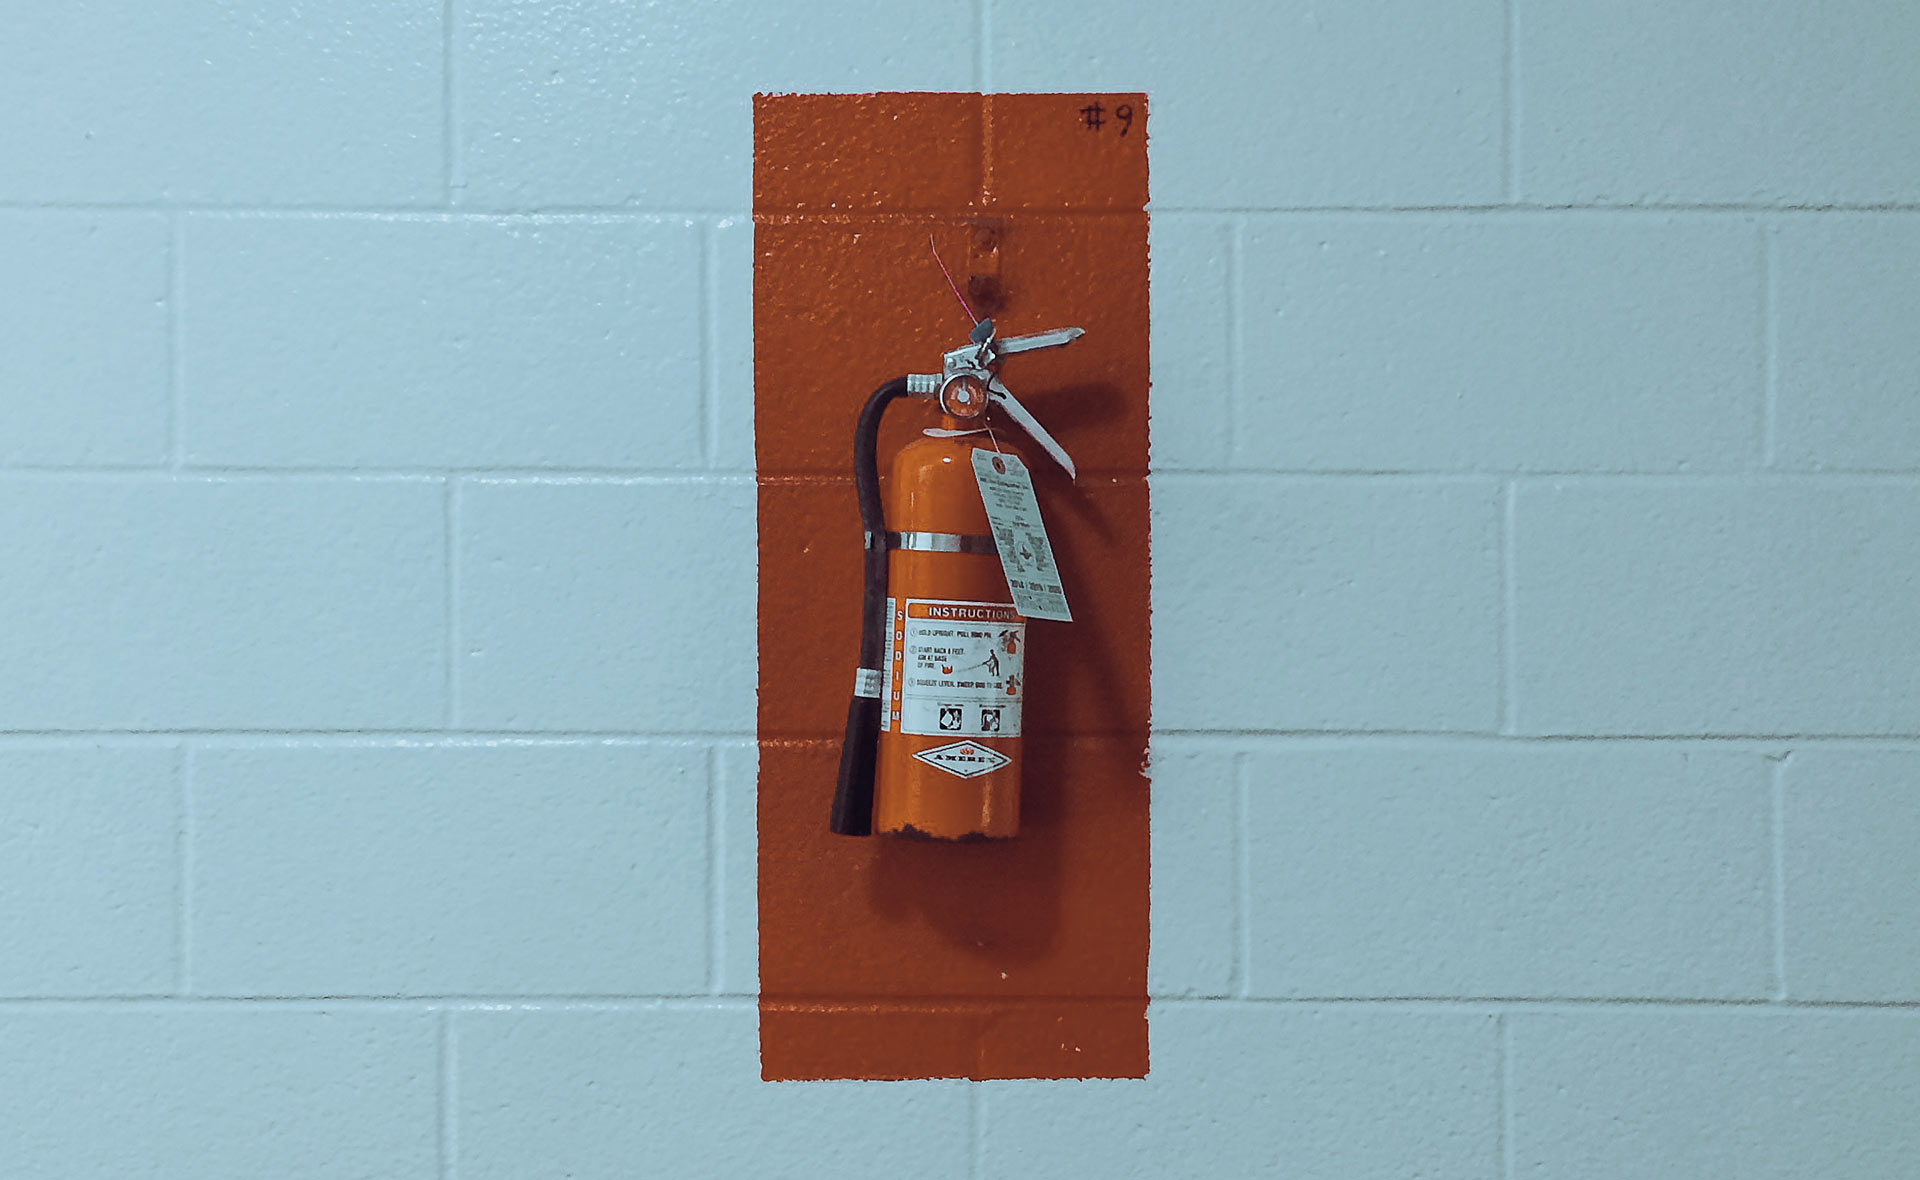 Feuerlöscher montiert an einer Wand mit roter Sicherheitsmarkierung